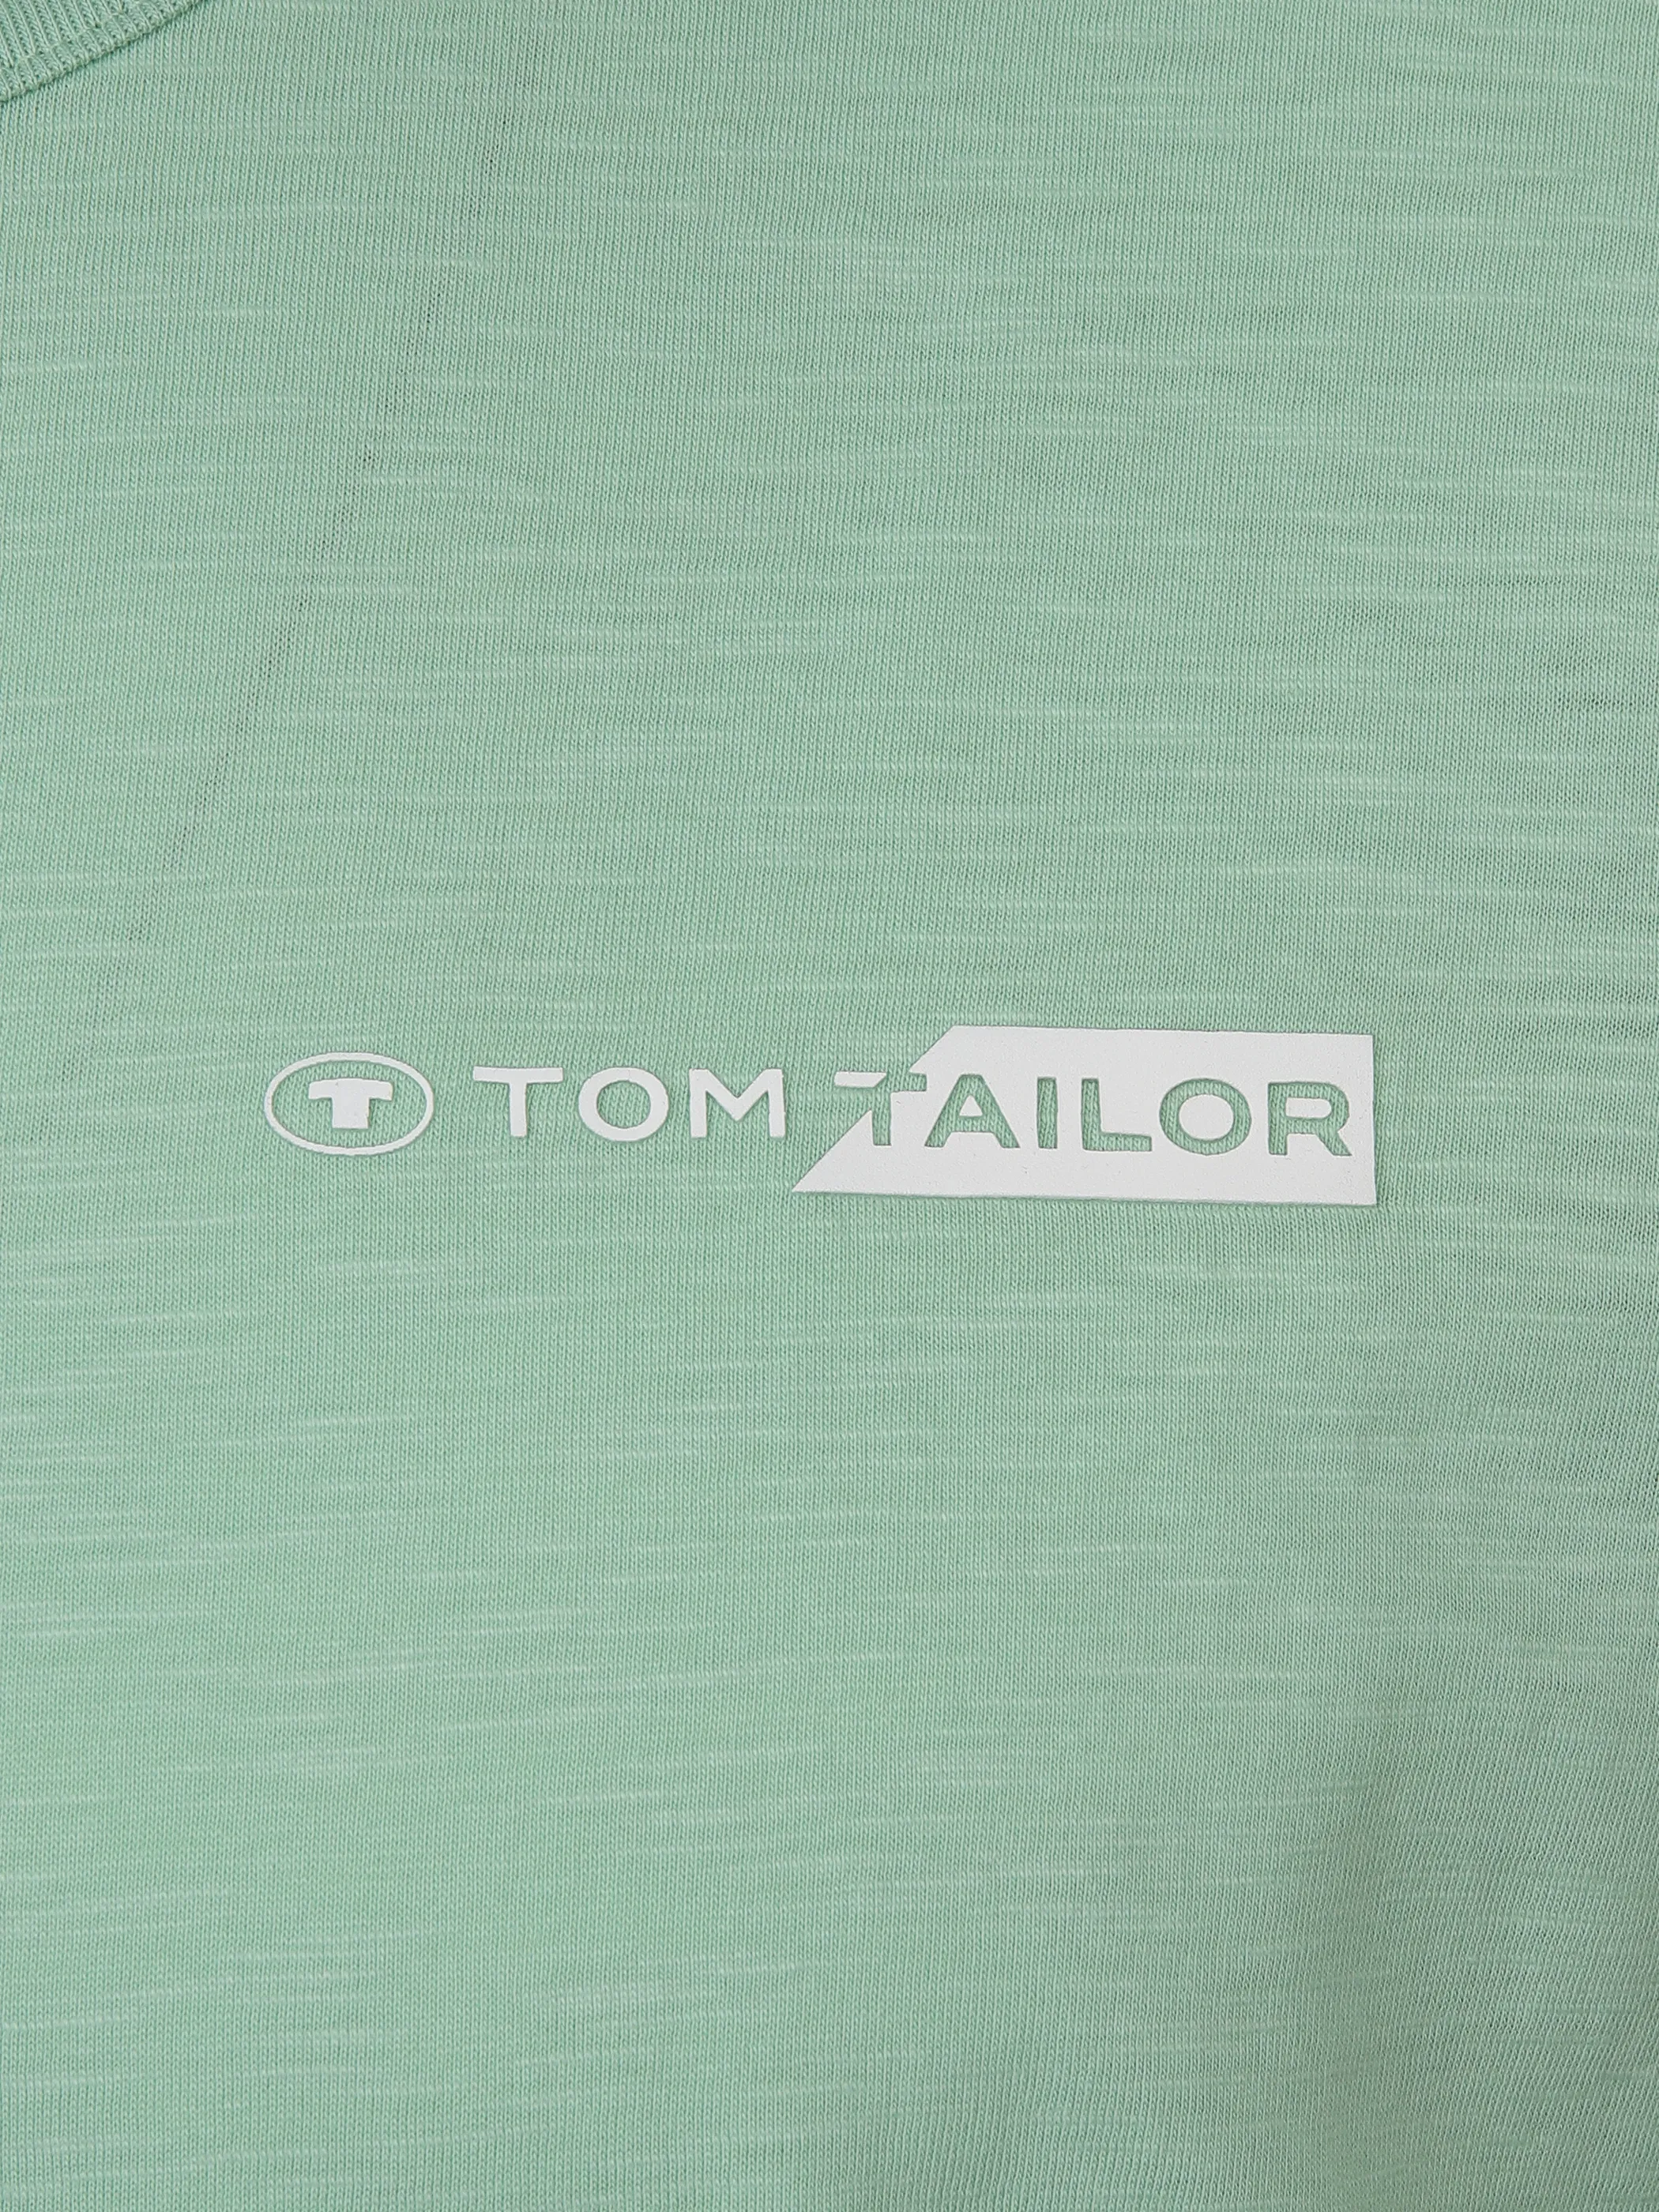 Tom Tailor 1040821 NOS printed t-shirt Logo Türkis 890933 23383 3